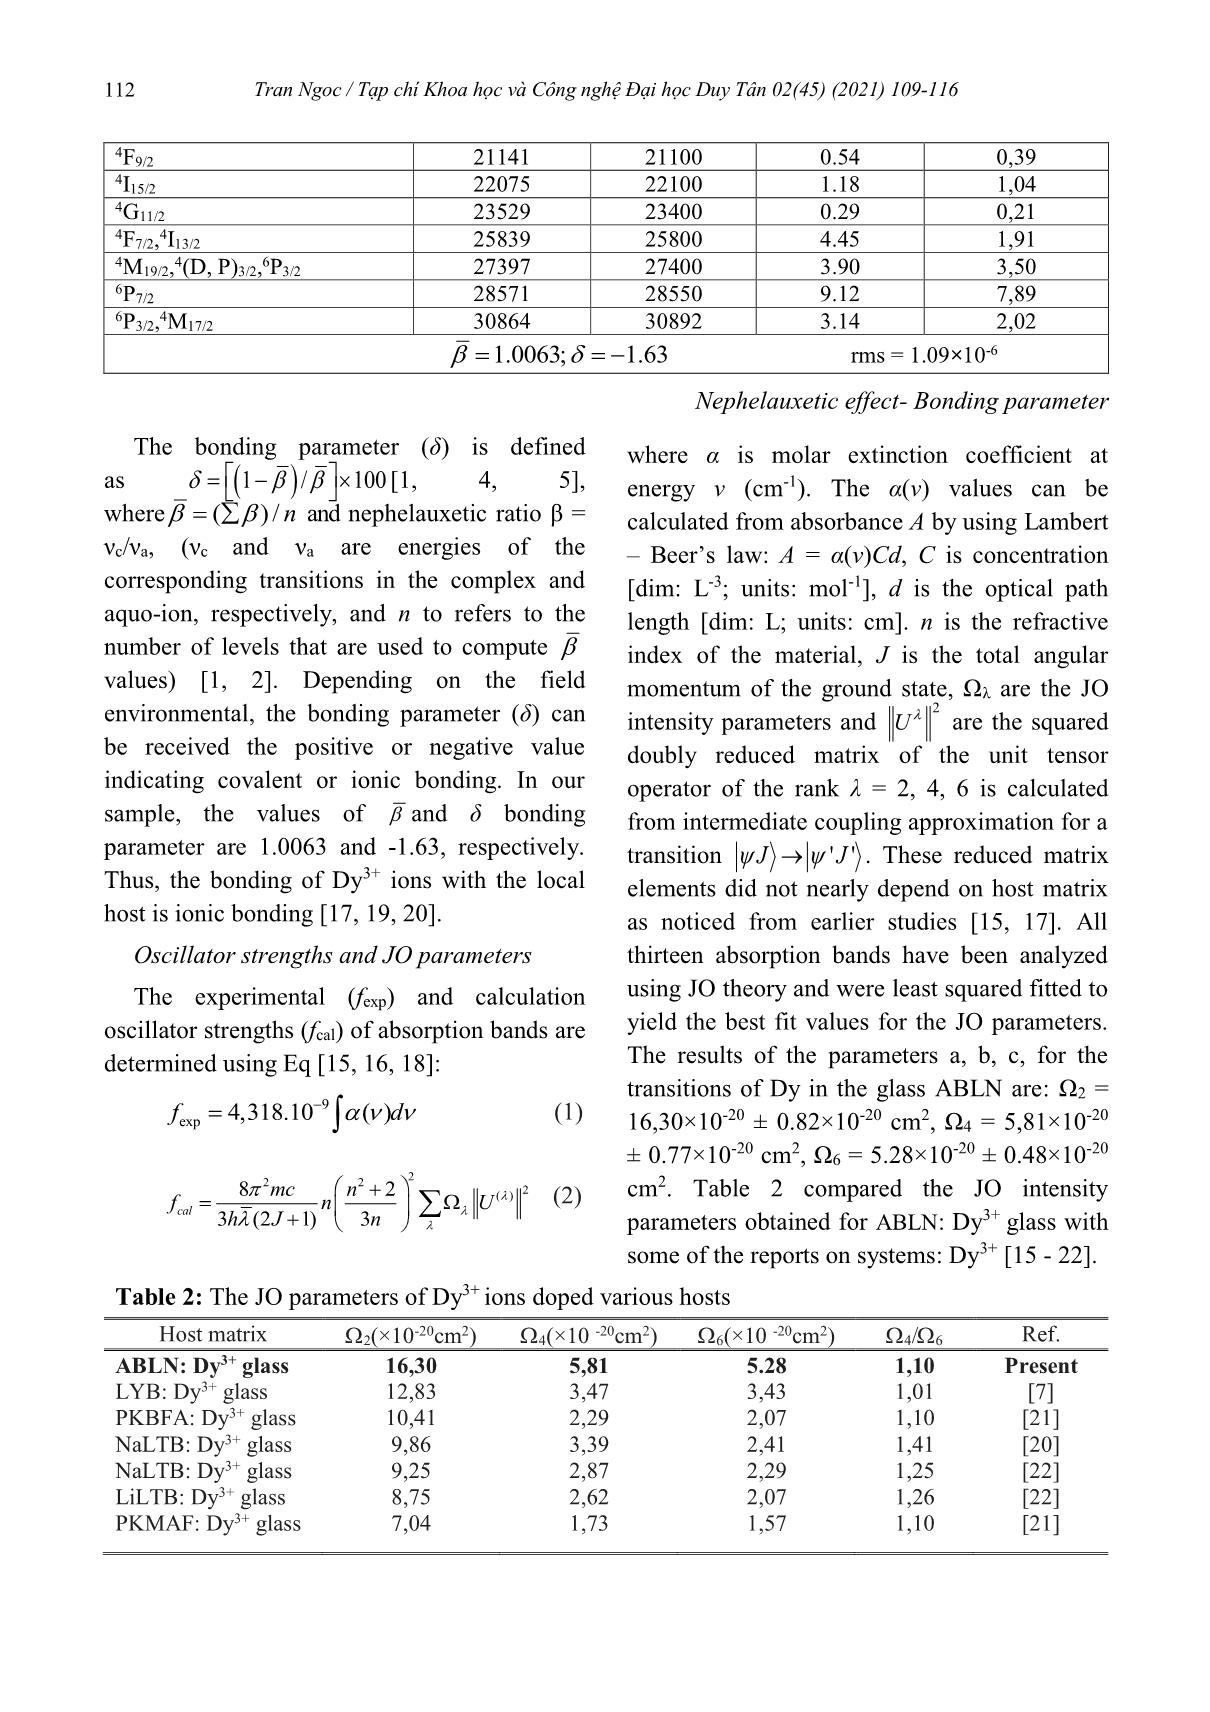 Sử dụng lý thuyết Judd-Ofelt để phân tích phổ về cấu trúc mạng của thủy tinh lithium-sodium aluminoborate glass pha tạp ion Dy+3 trang 4